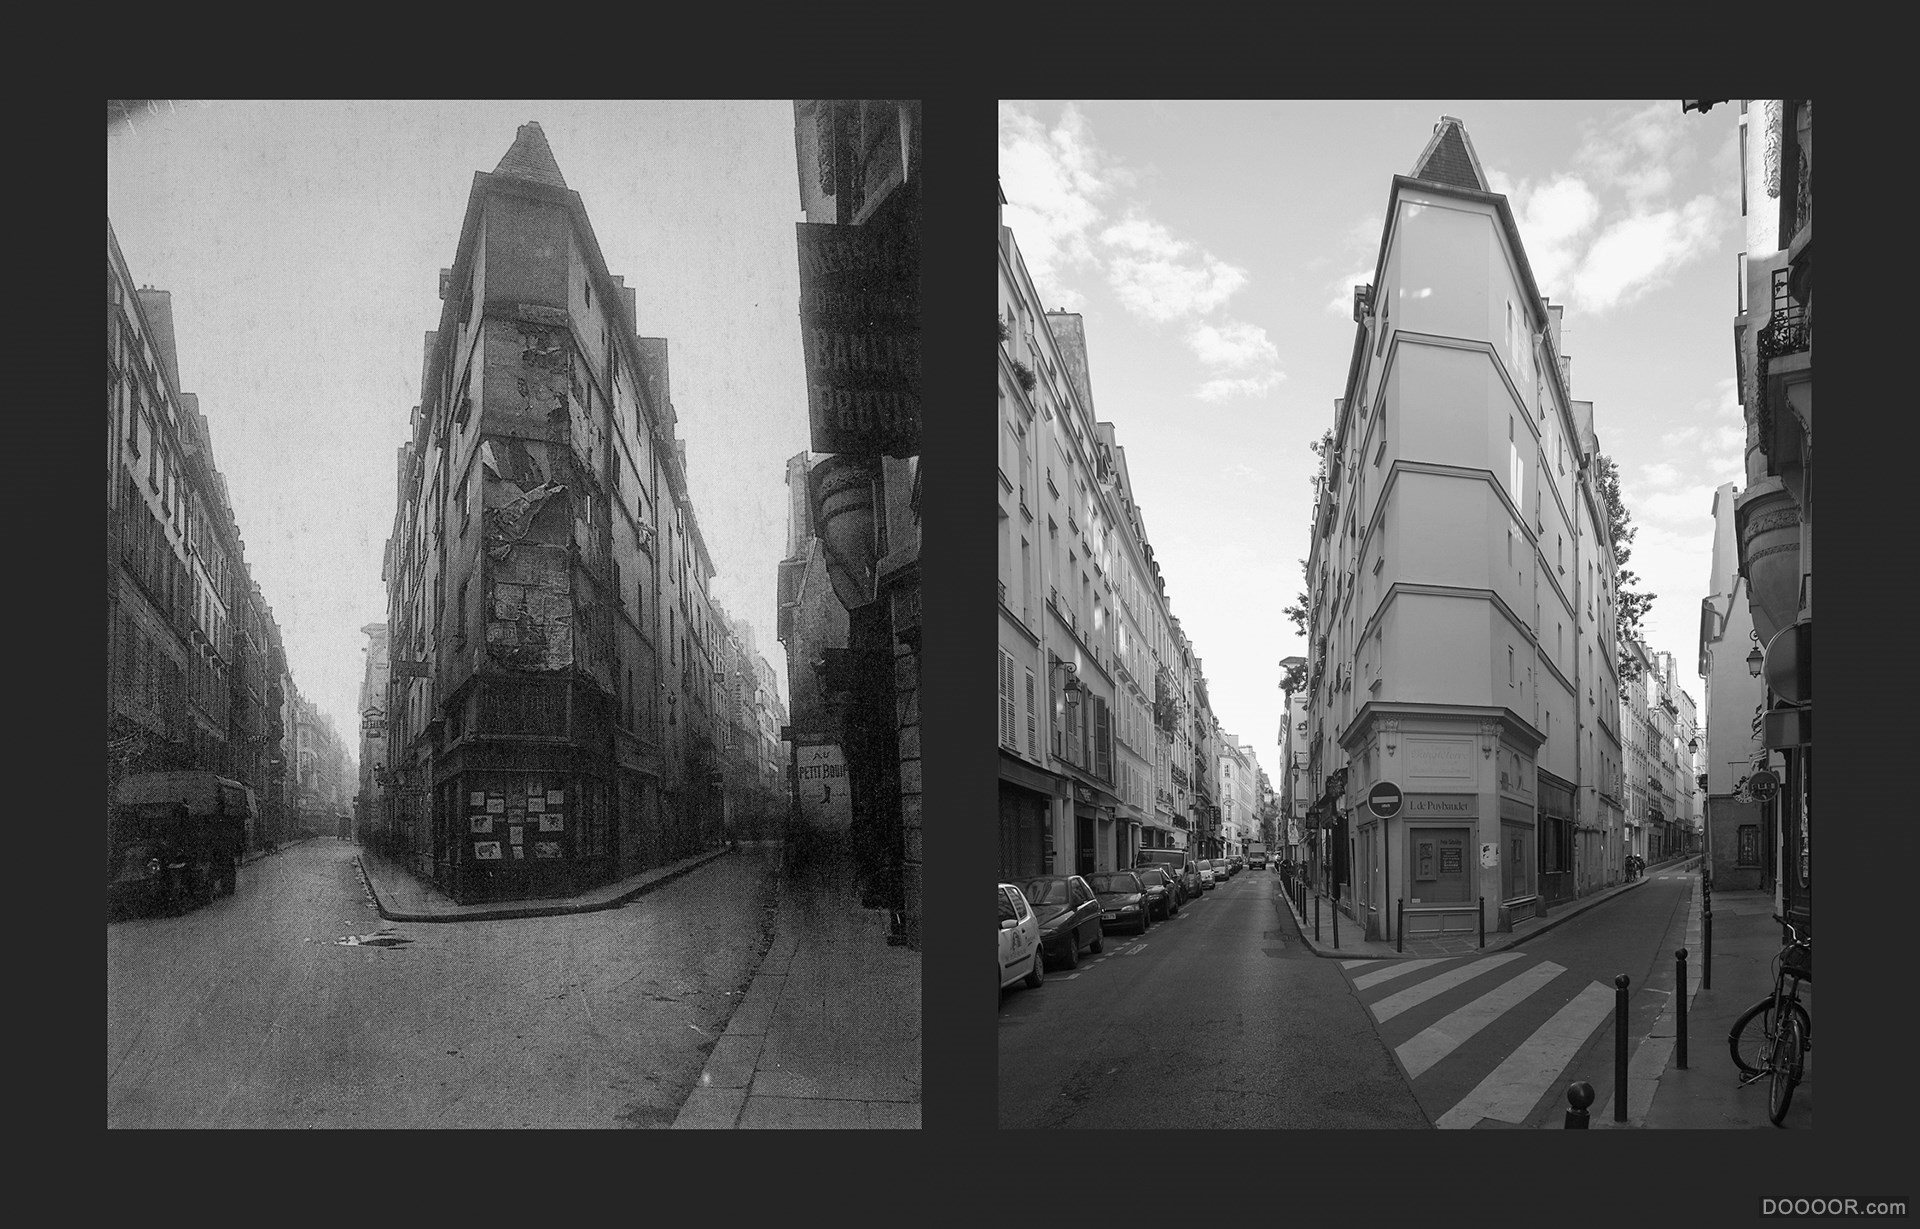 过去与现在-巴黎街头照片对比 [50P] (23).jpg